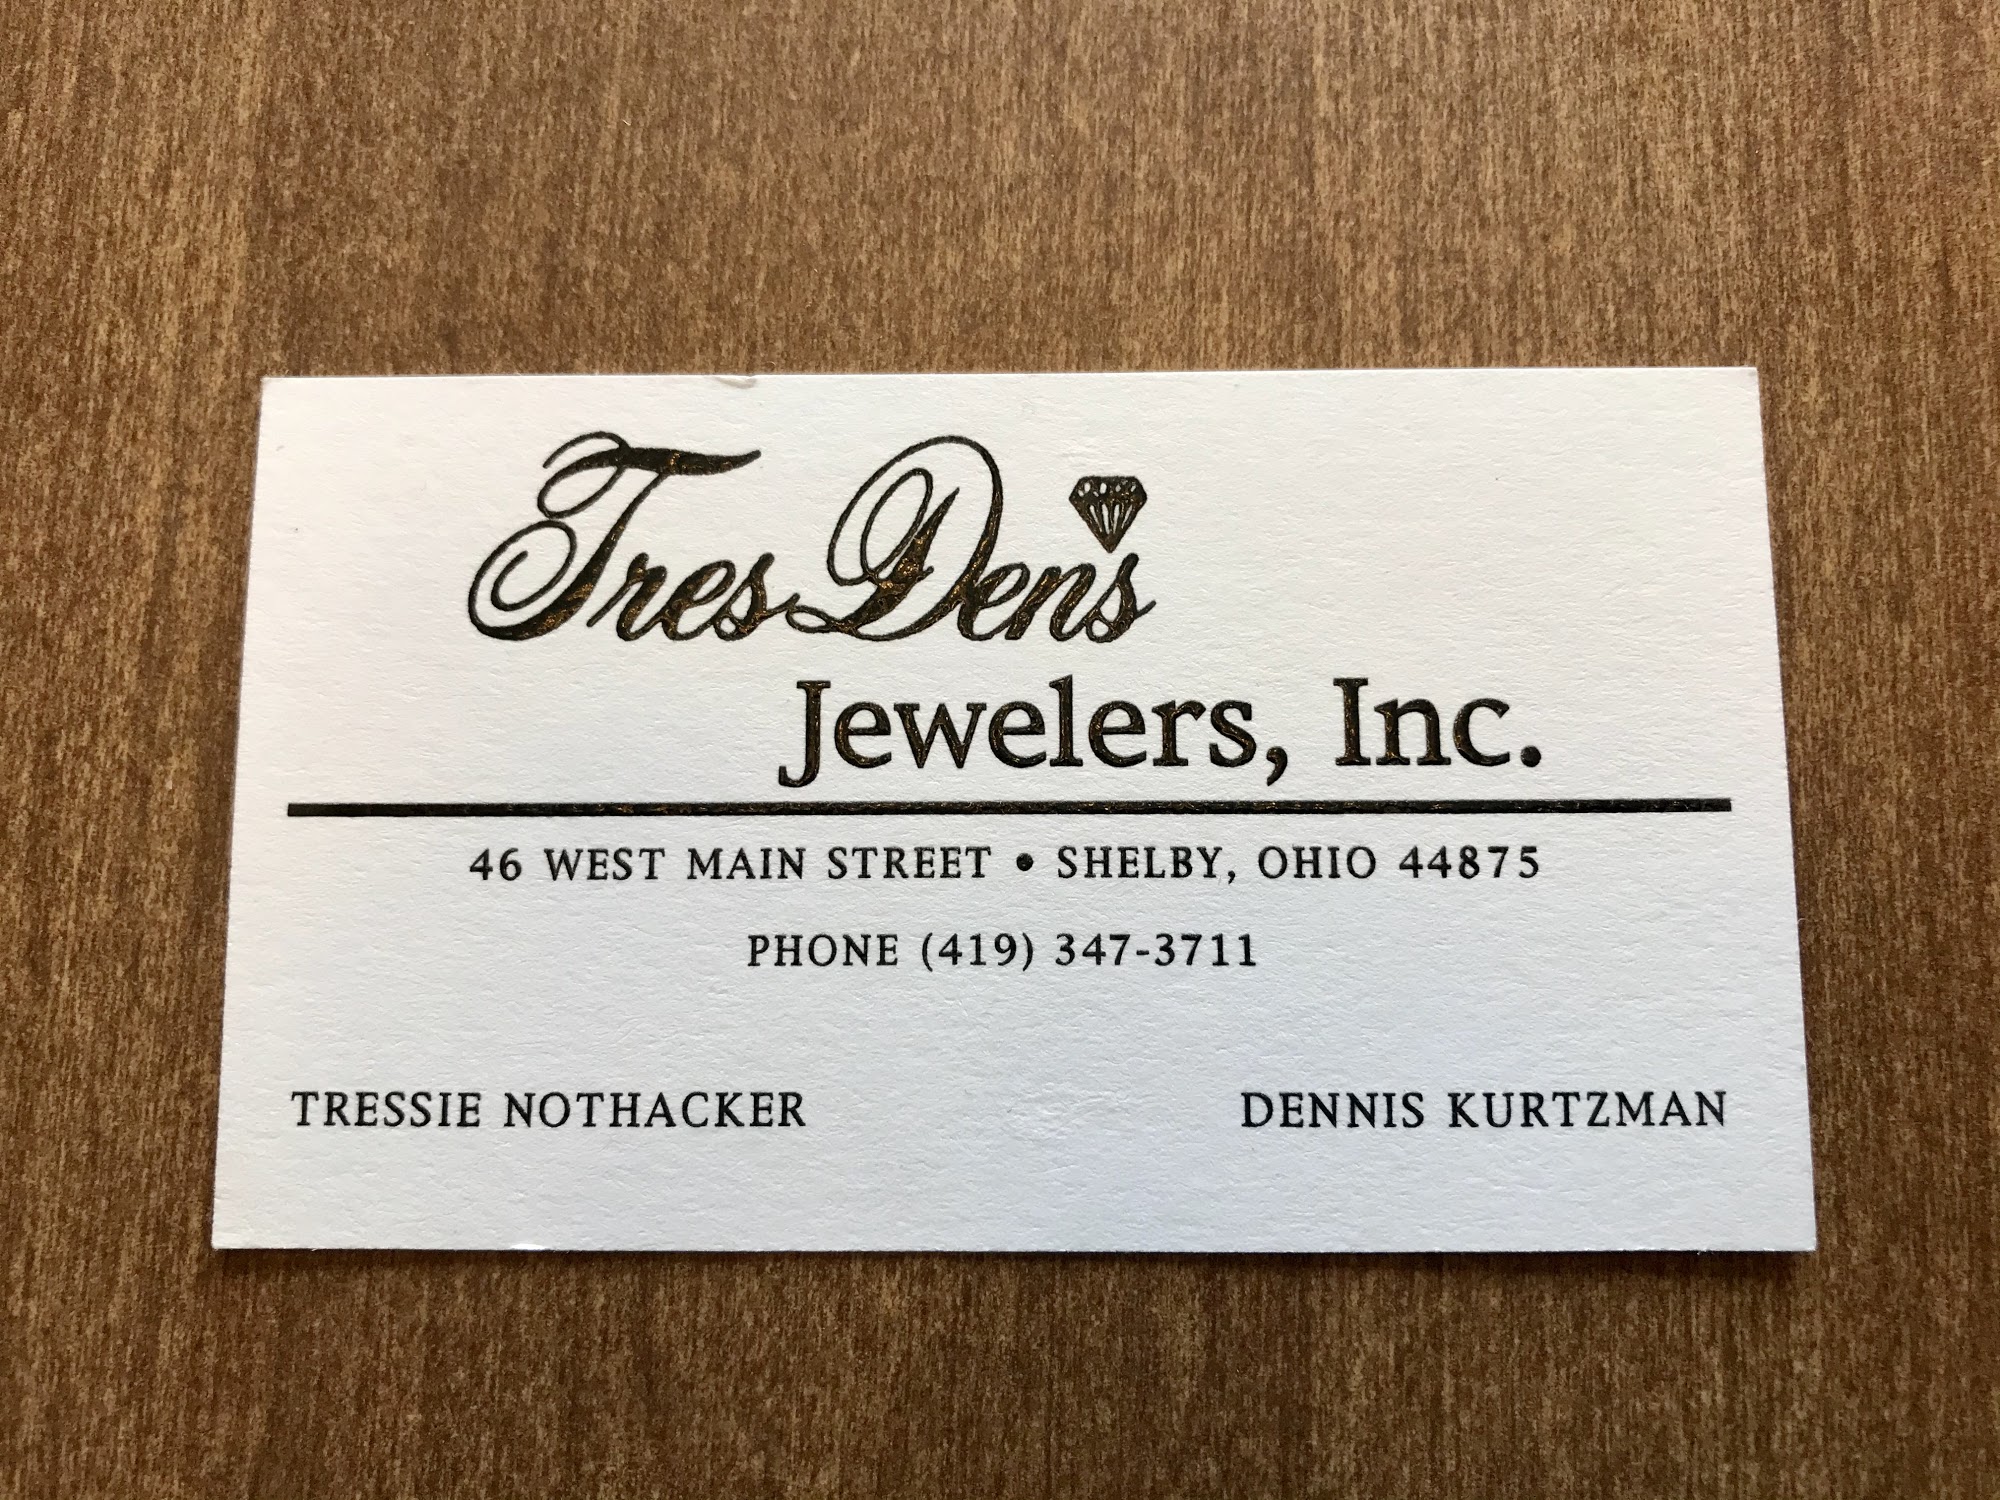 Tres Den's Jewelry Store Inc